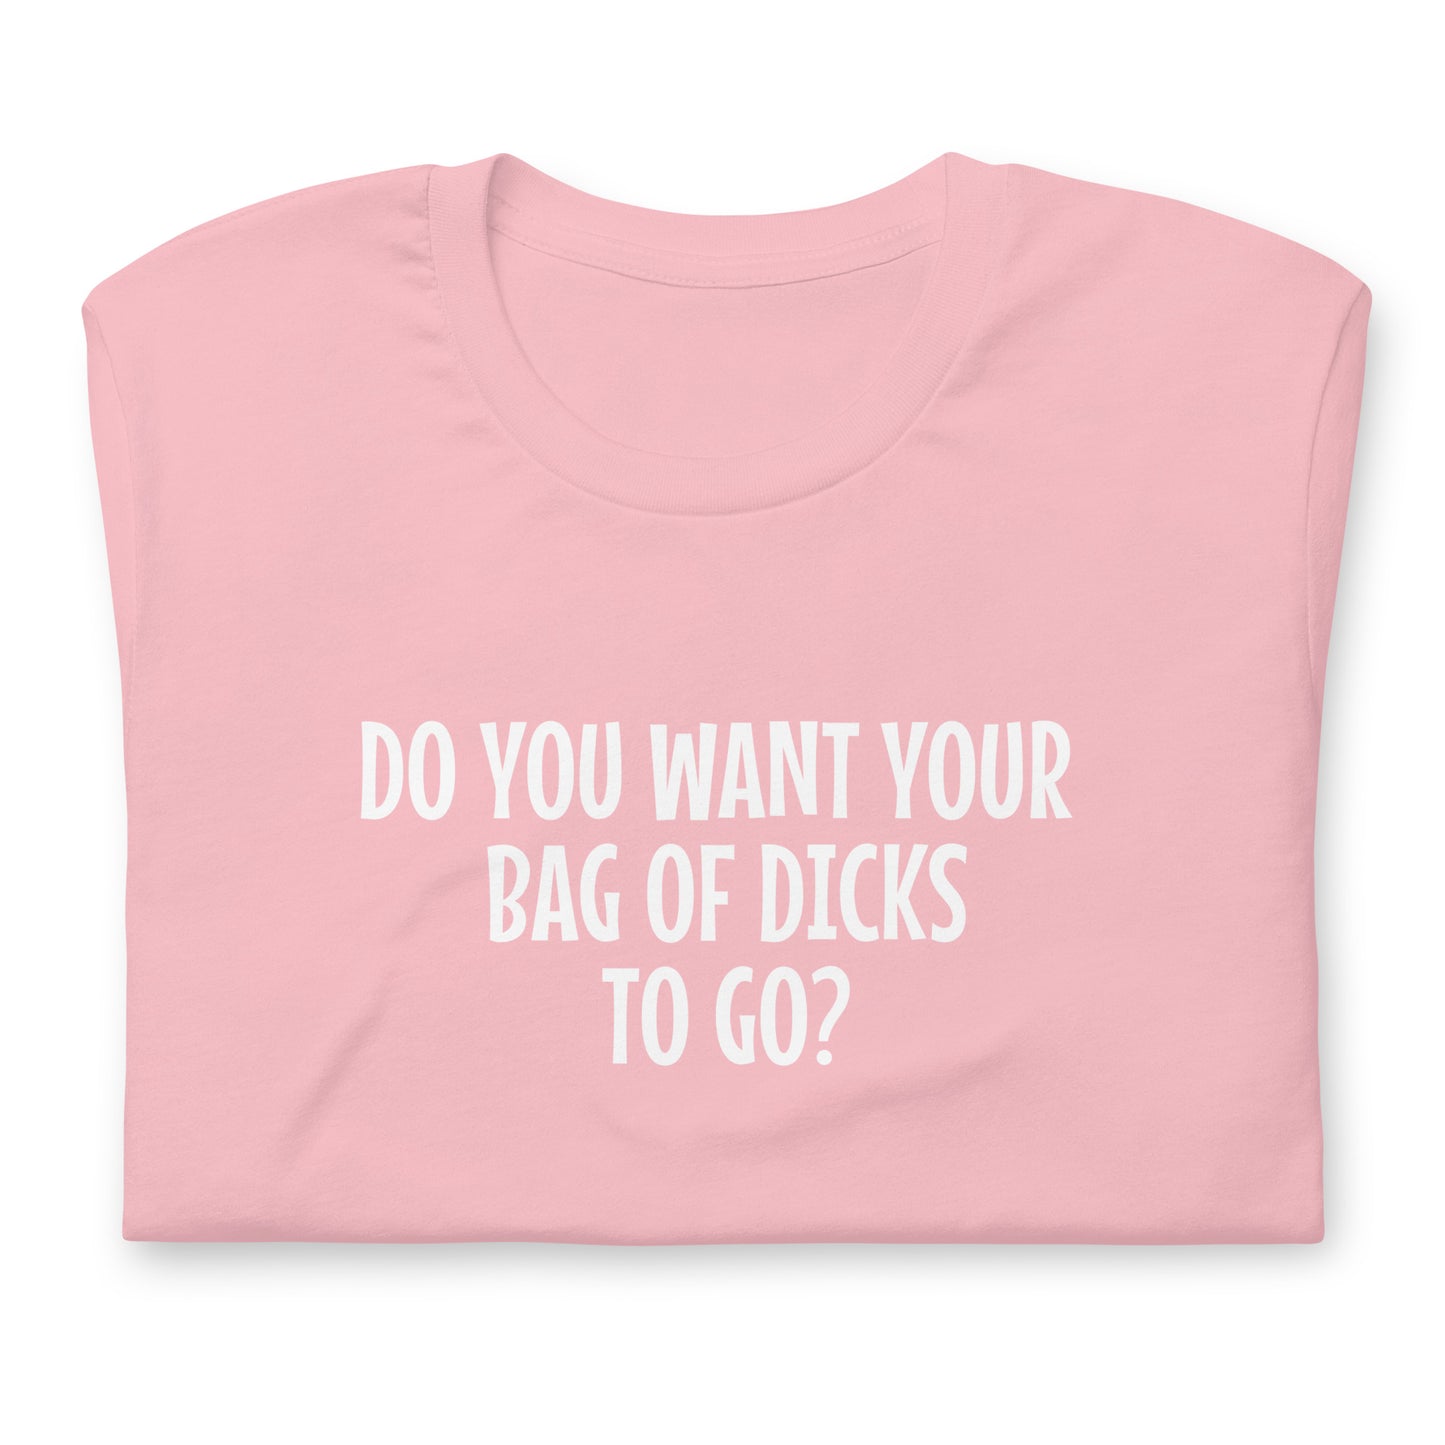 Bag of Dicks?